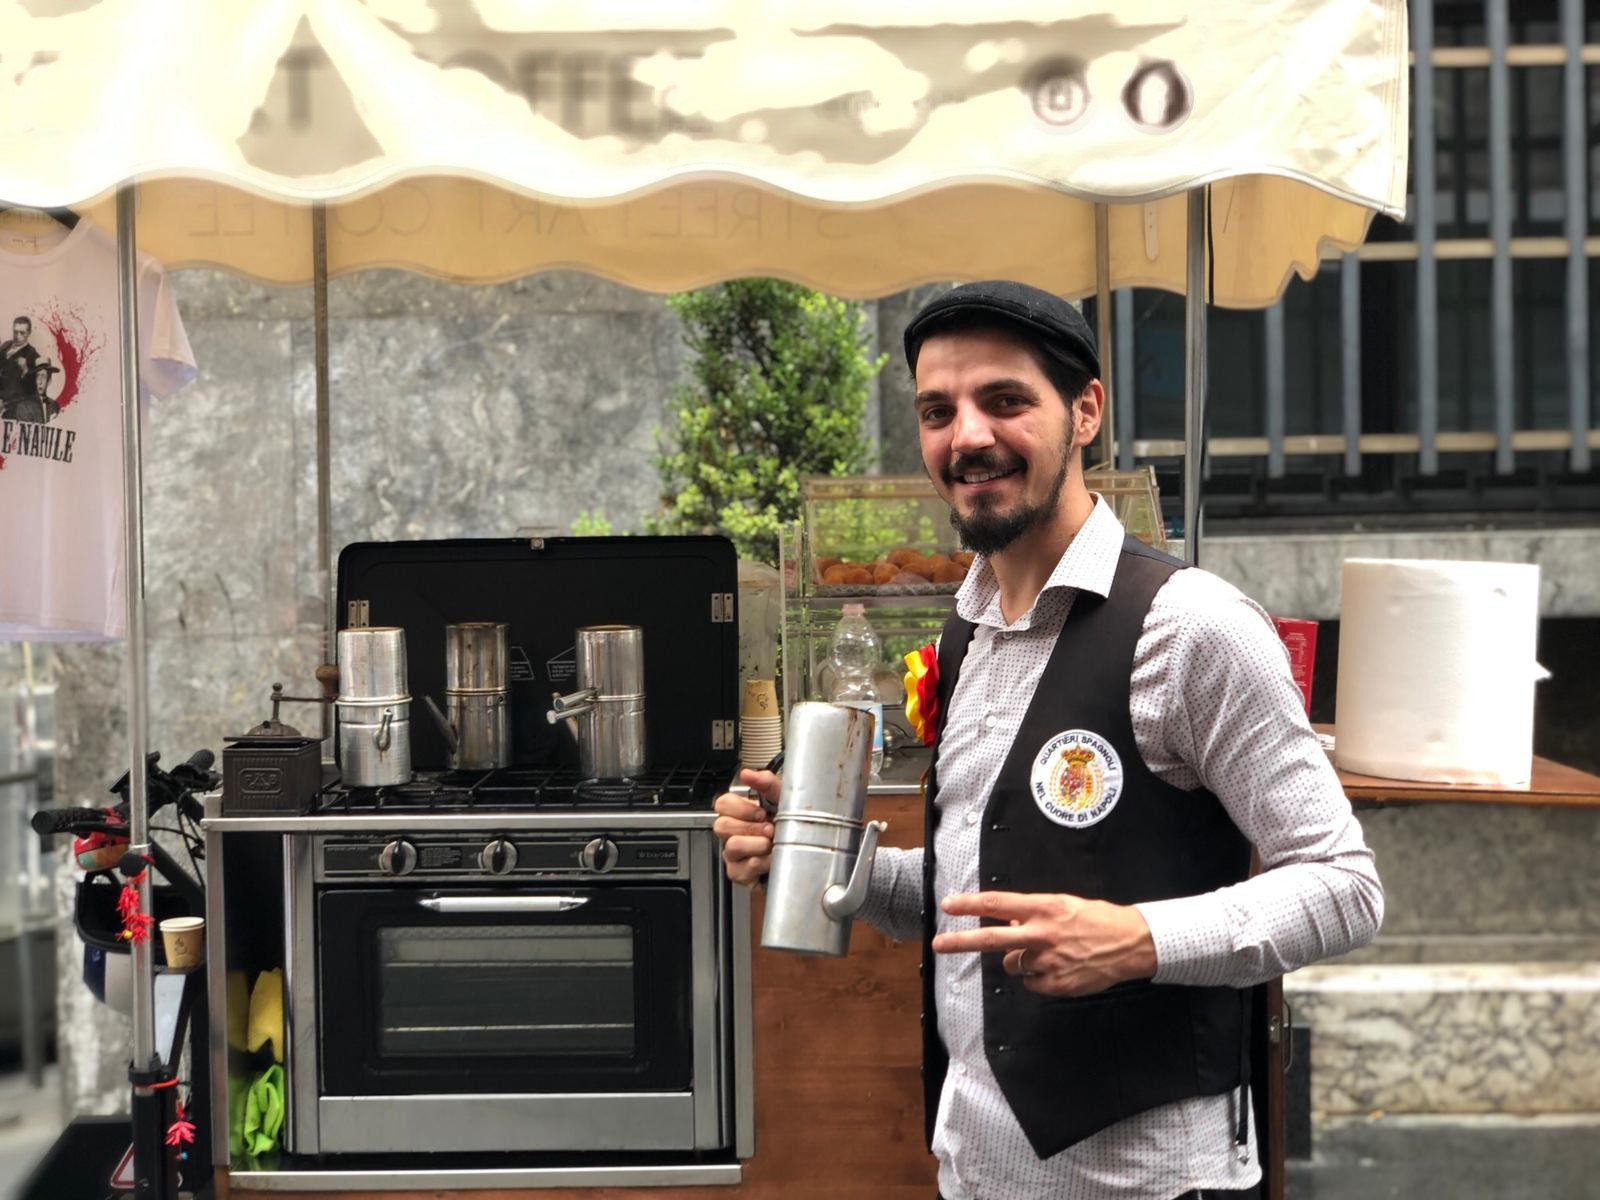 Exploring the cuccuma: A traditional Neapolitan coffee pot